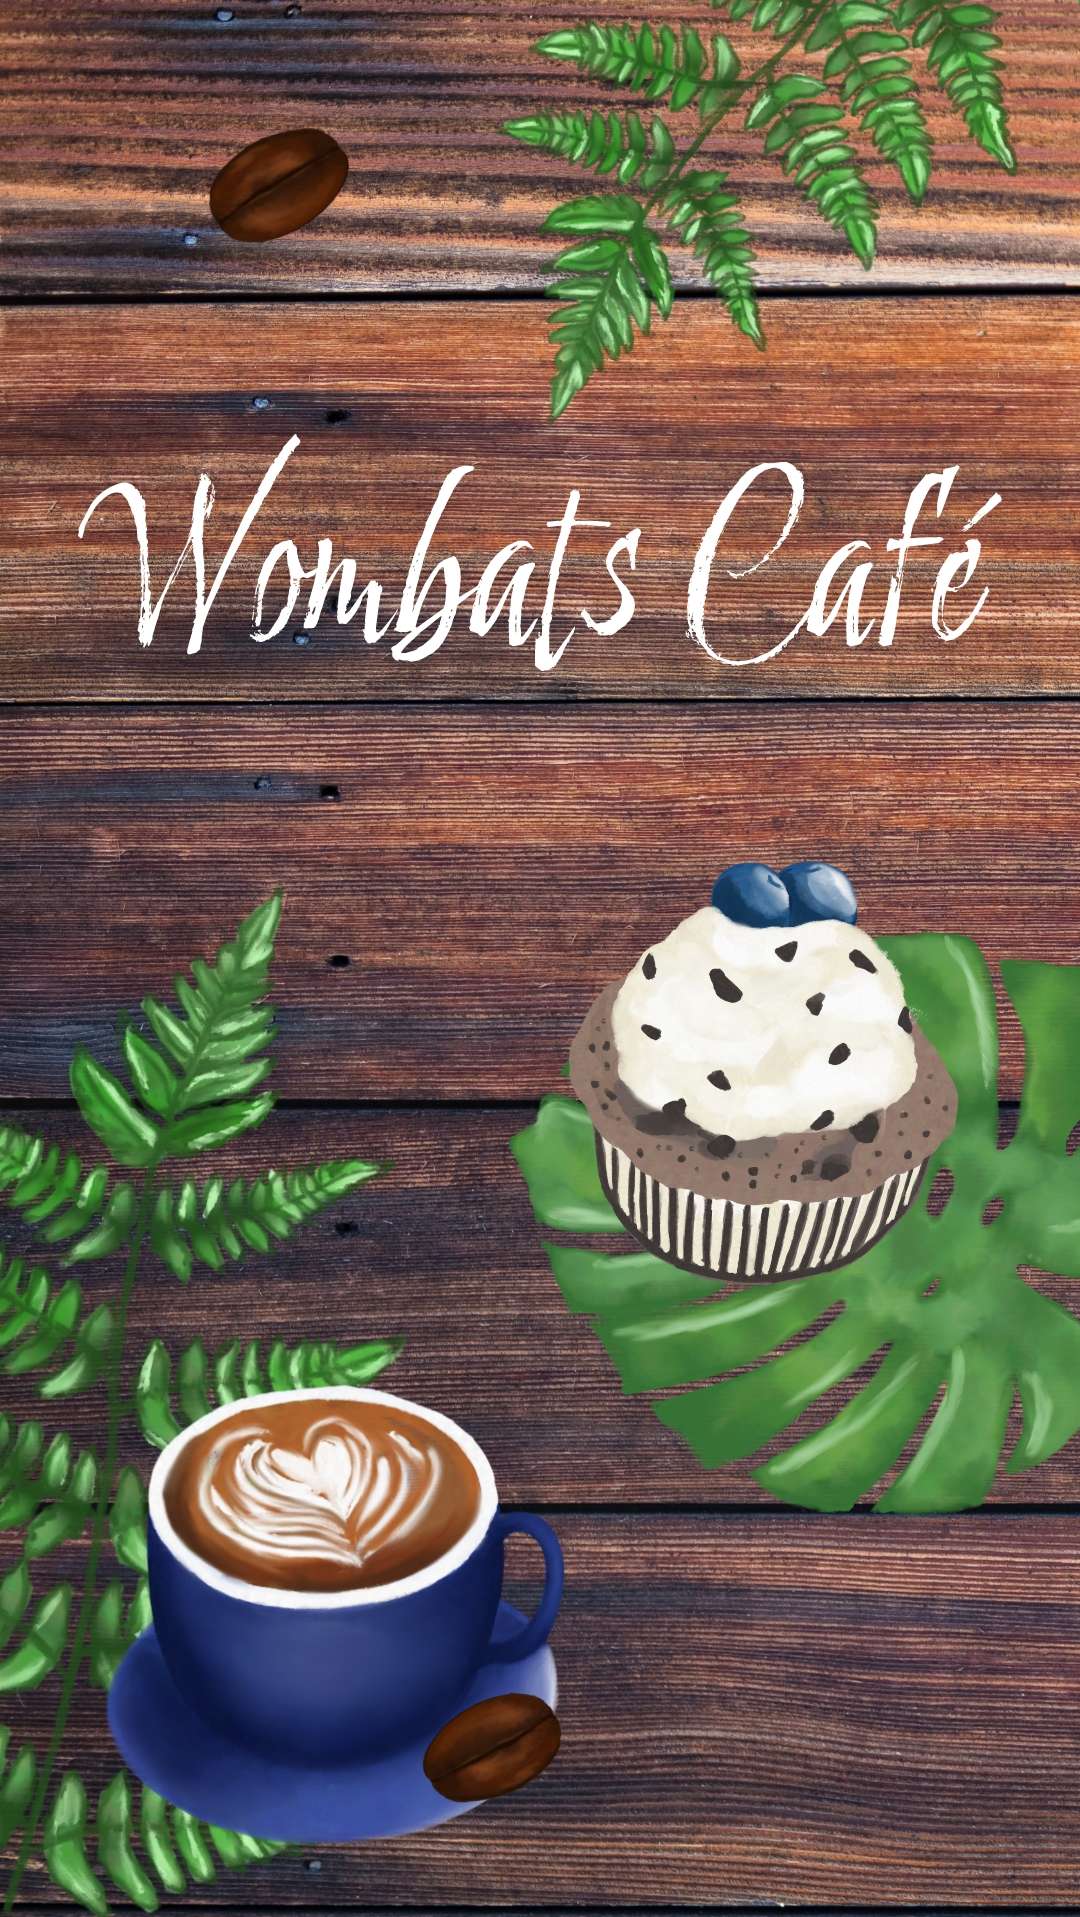 Der Schriftzug Wombats Café auf einem gemütlichen wirkenden Holzhintergrund. Verschiedene Pflanzen ranken in das Bild um eine blaue Kaffeetasse mit Latteart und einen Blaubeermuffin. Einzelne Kaffeebohnen verteilen sich über das Bild.